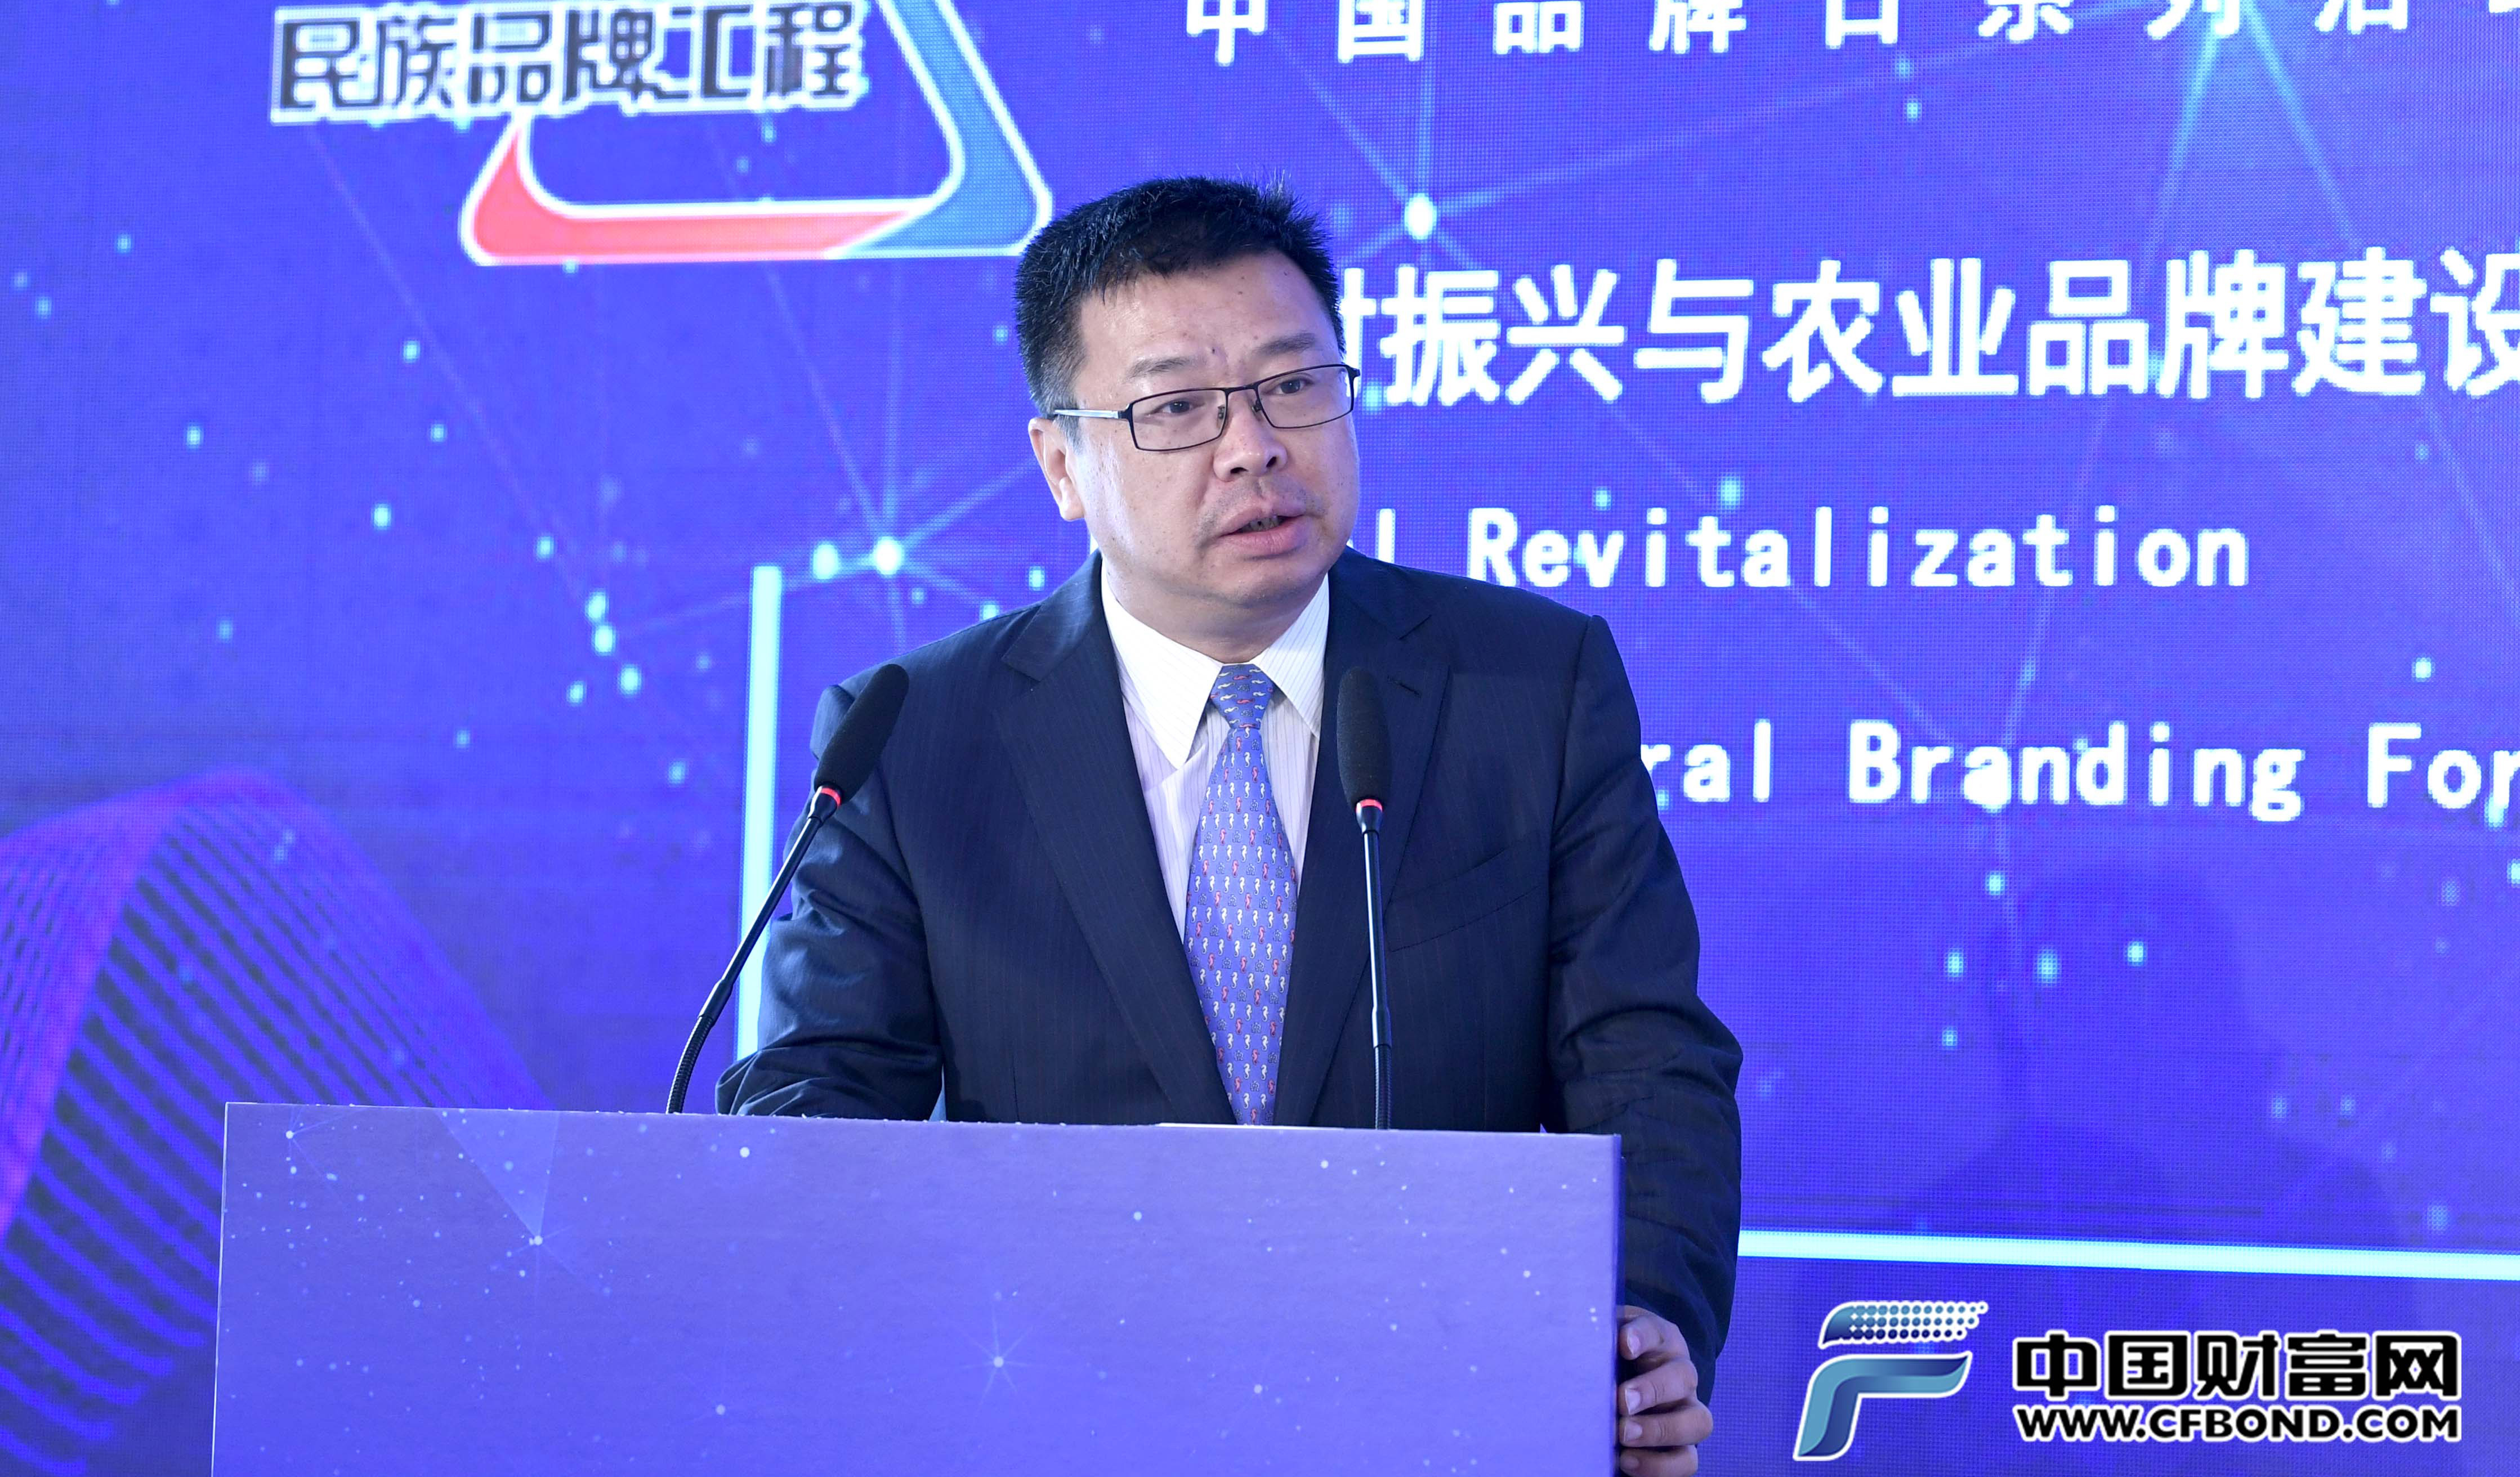 天伦集团副总裁、天伦燃气集团总经理刘民发表主题演讲